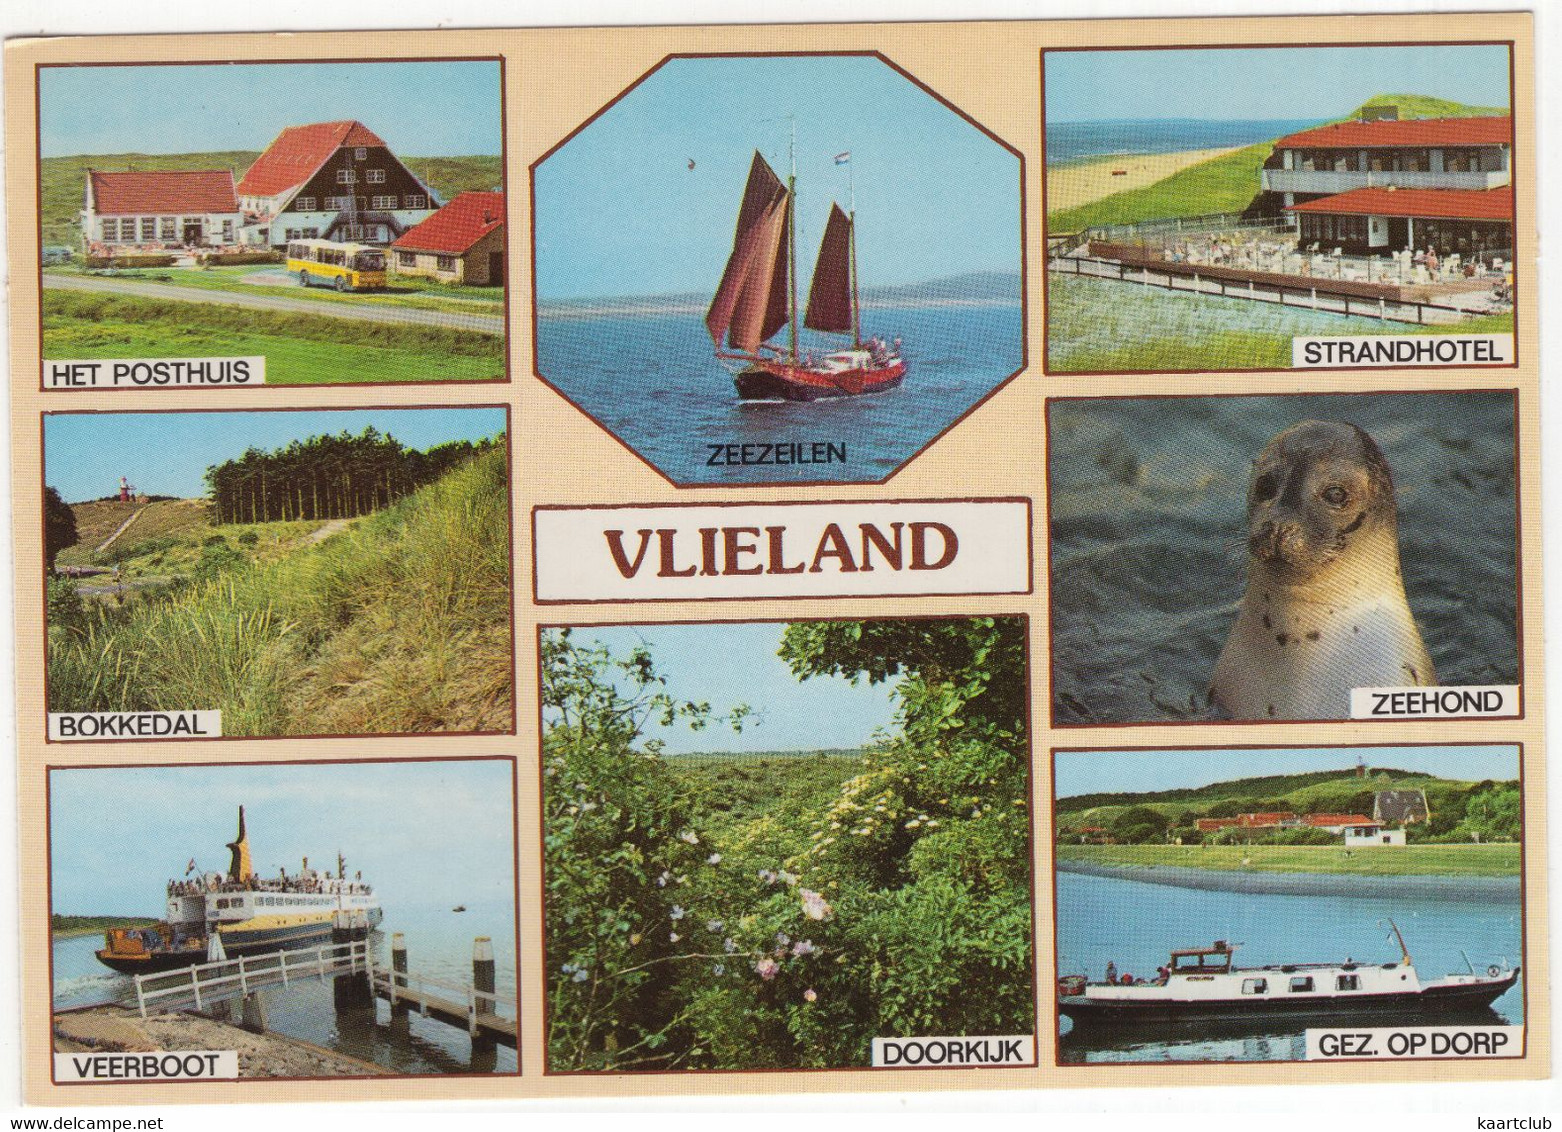 Vlieland: Posthuis, Bokkedal, Veerboot, Zeezeilen, Strandhotel, Zeehond, Dorp, Doorkijk (Nederland/Holland) - Nr. VLD 62 - Vlieland